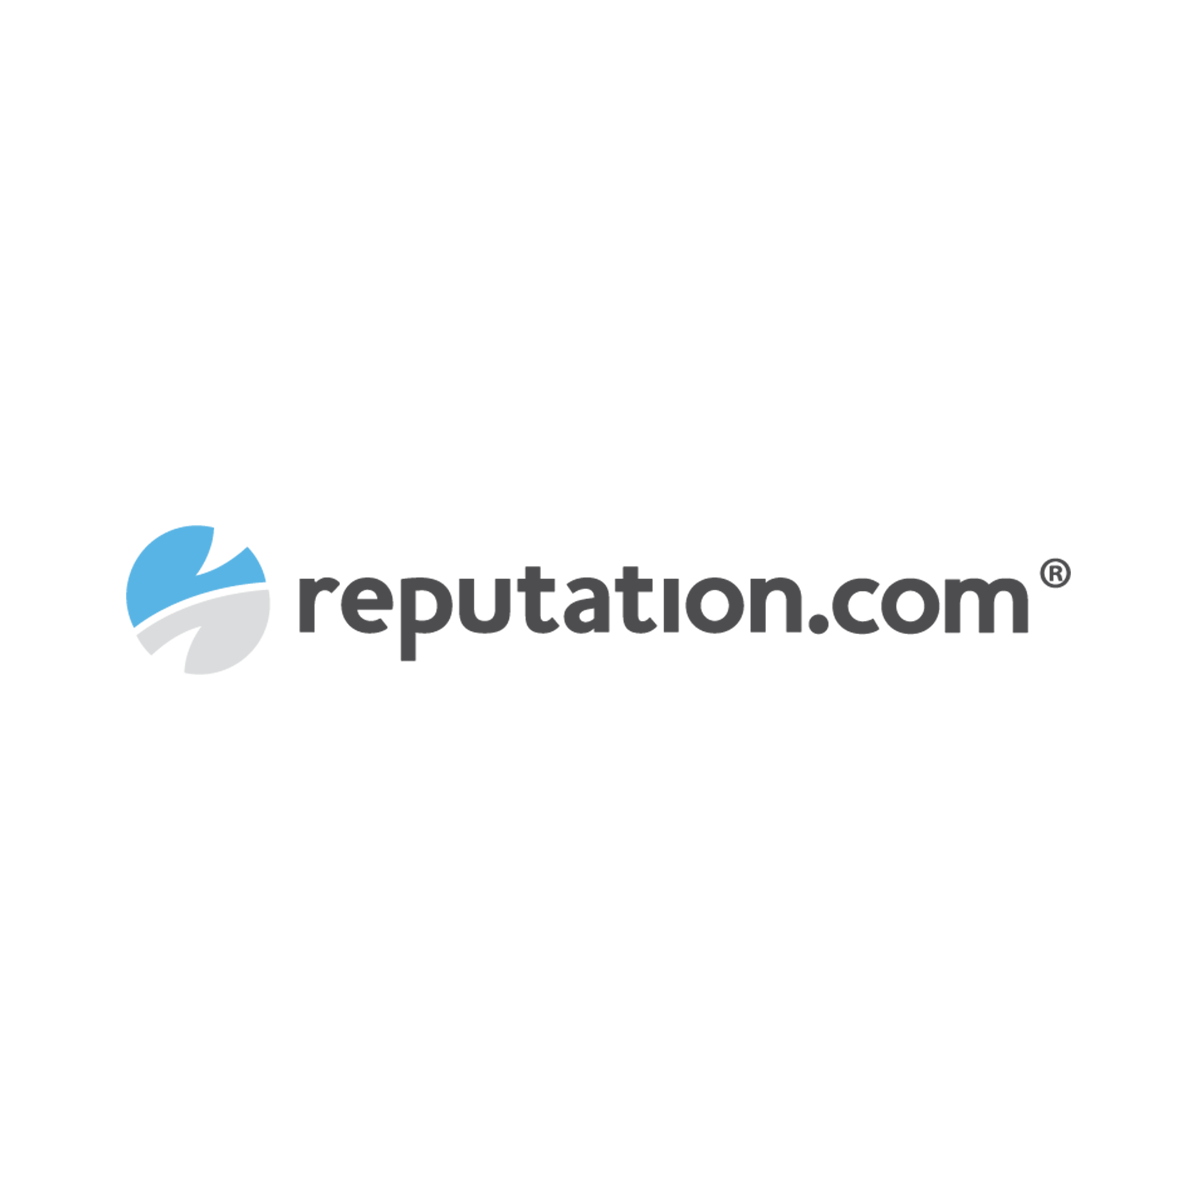 Reputation Logo - Reputation.com - Sales Development Representative (SDR)